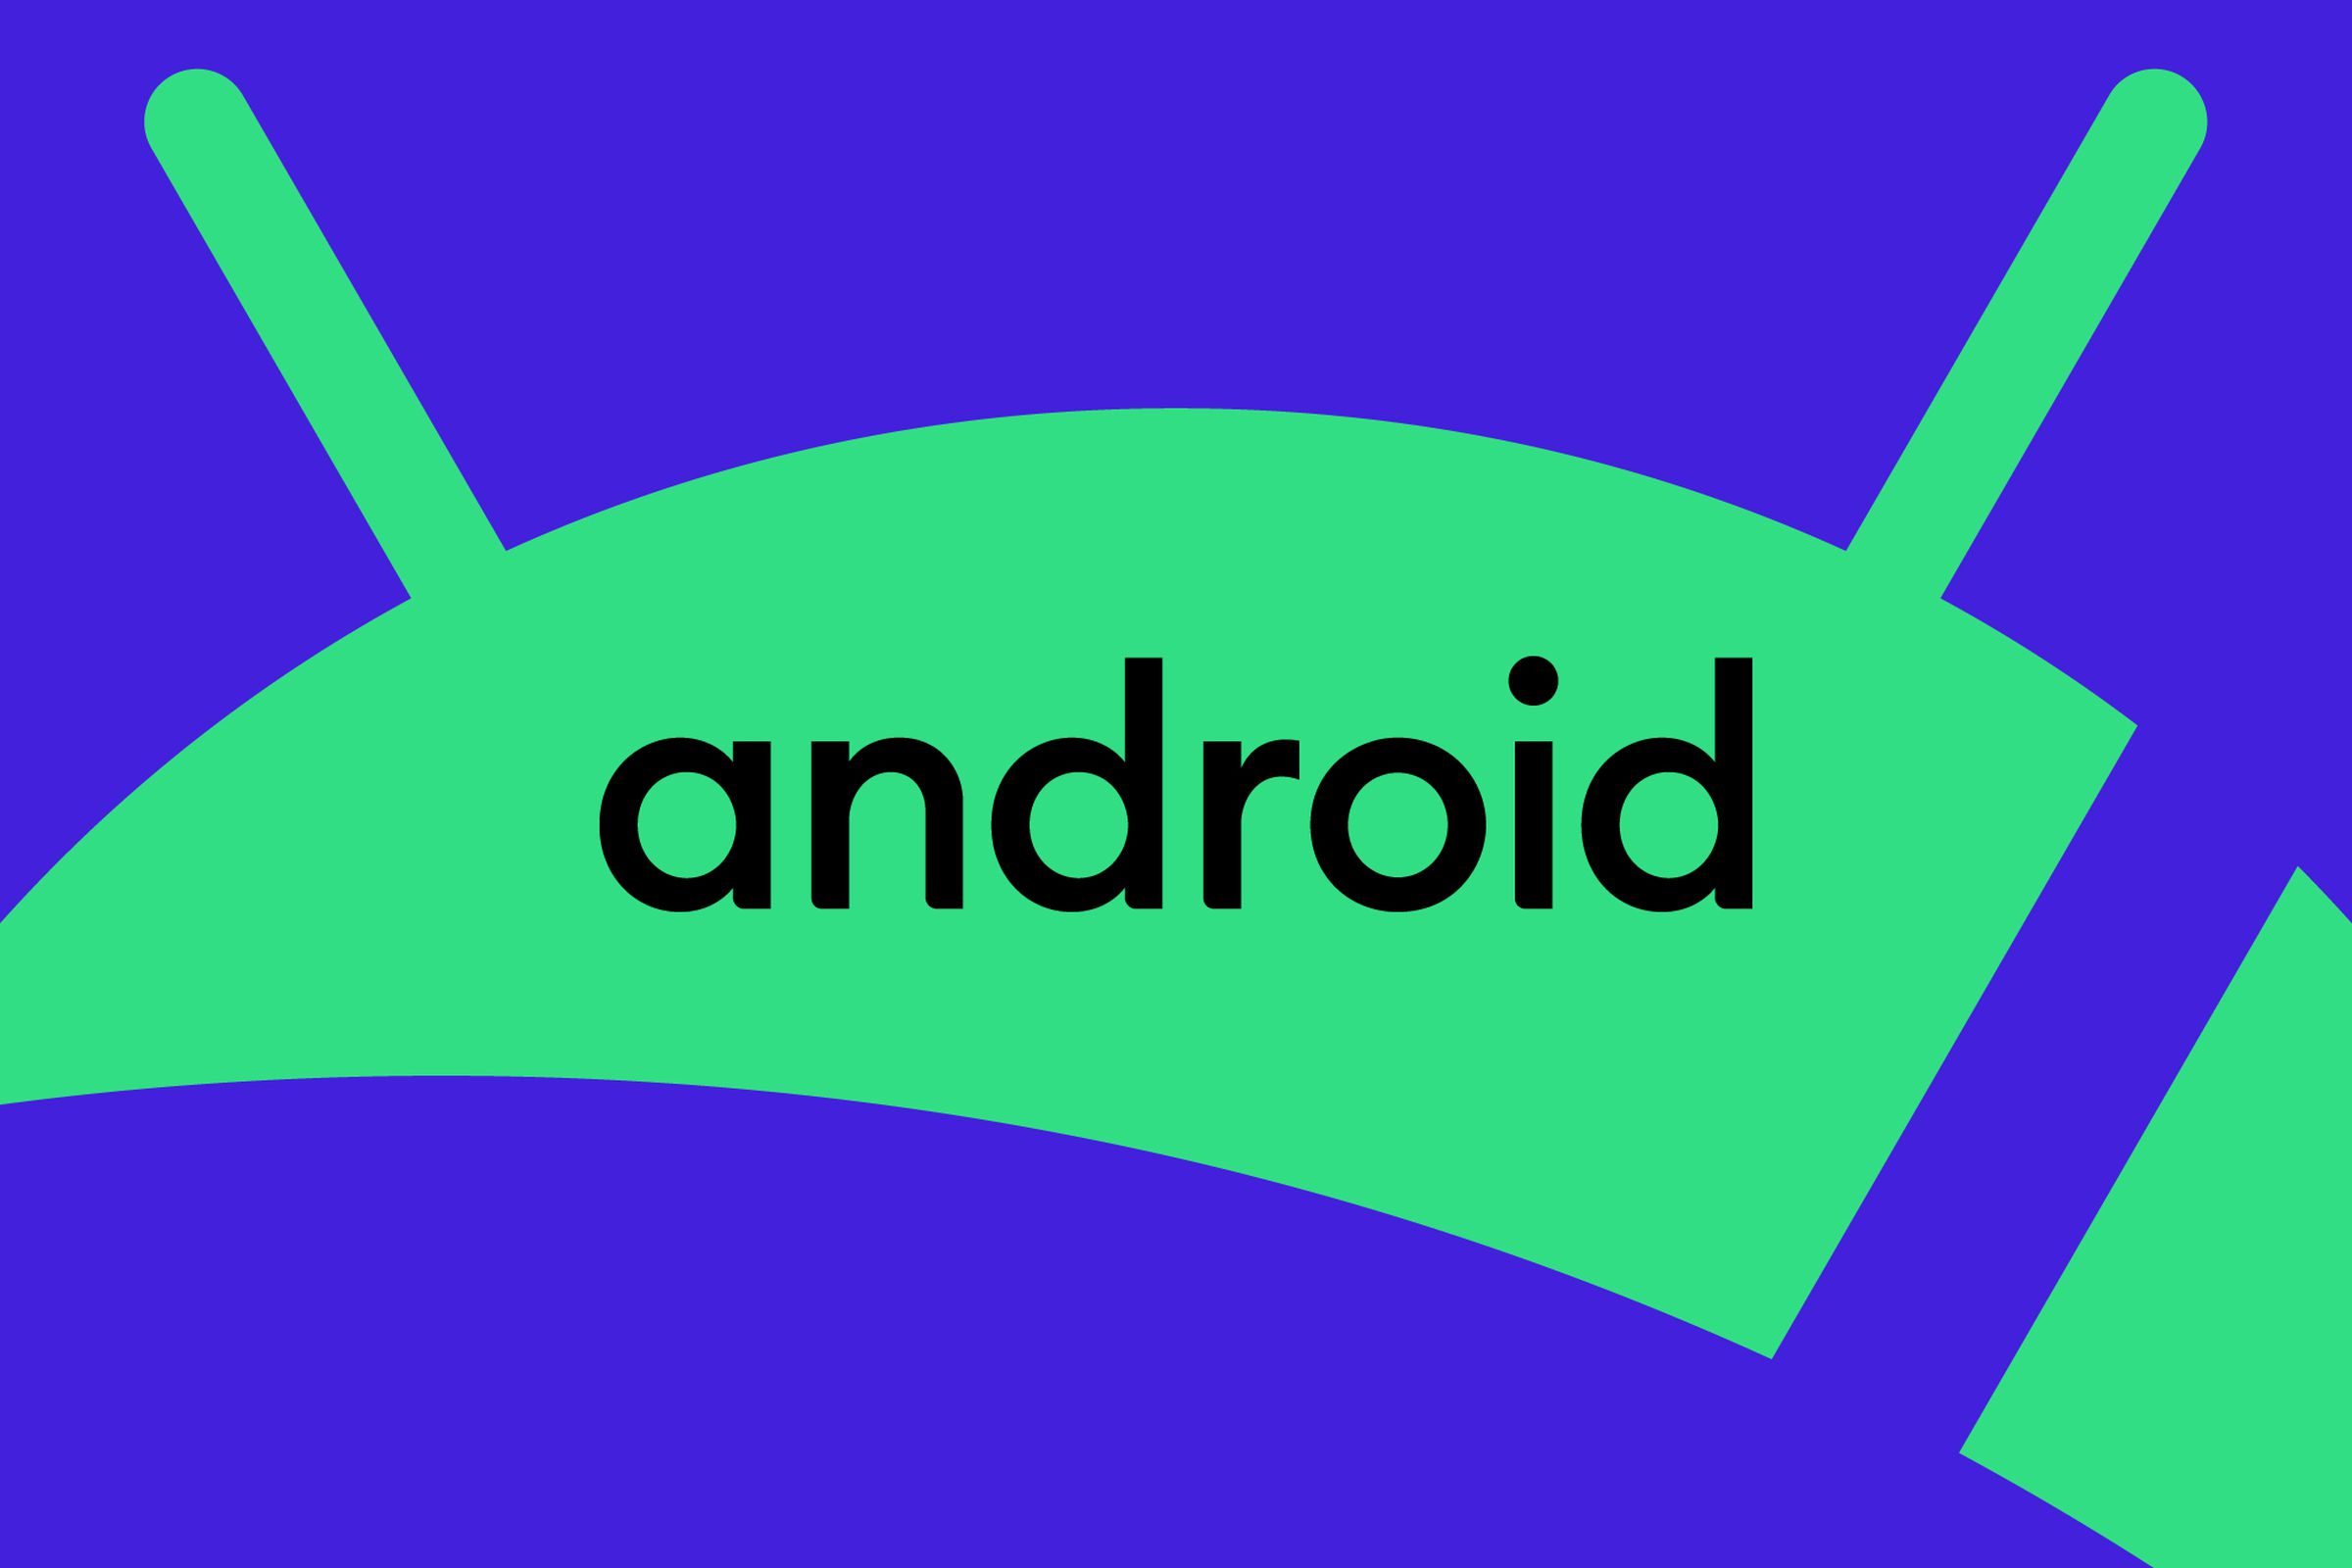 Logo Android dengan latar belakang hijau dan biru.